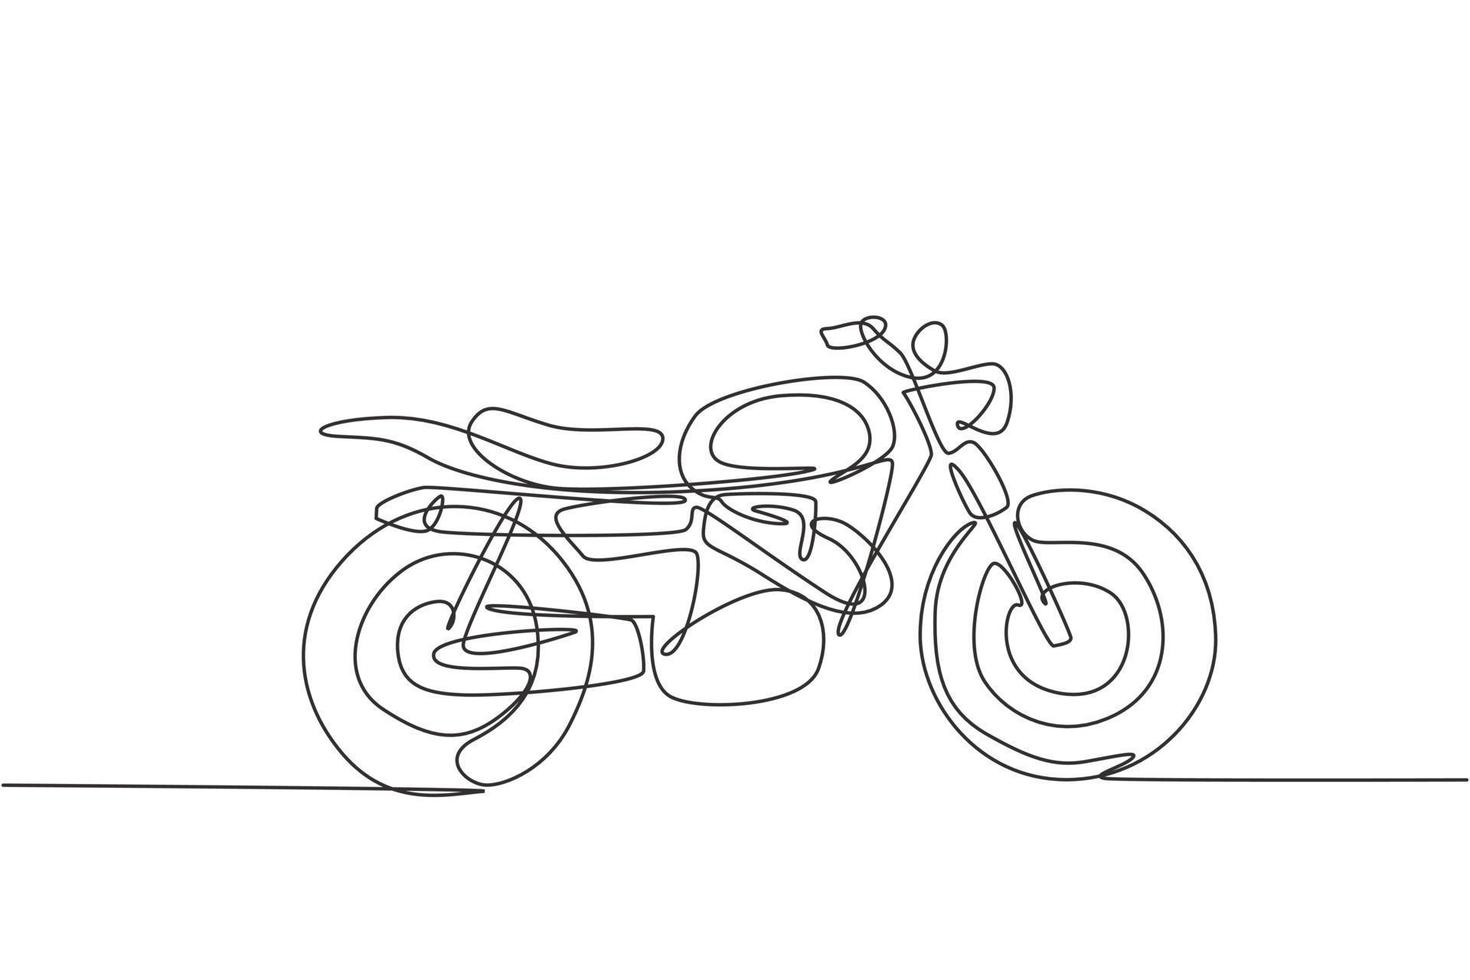 een doorlopende lijntekening van retro oude vintage motorfiets icoon. klassieke motor transport concept enkele lijn grafisch tekenen ontwerp vectorillustratie vector